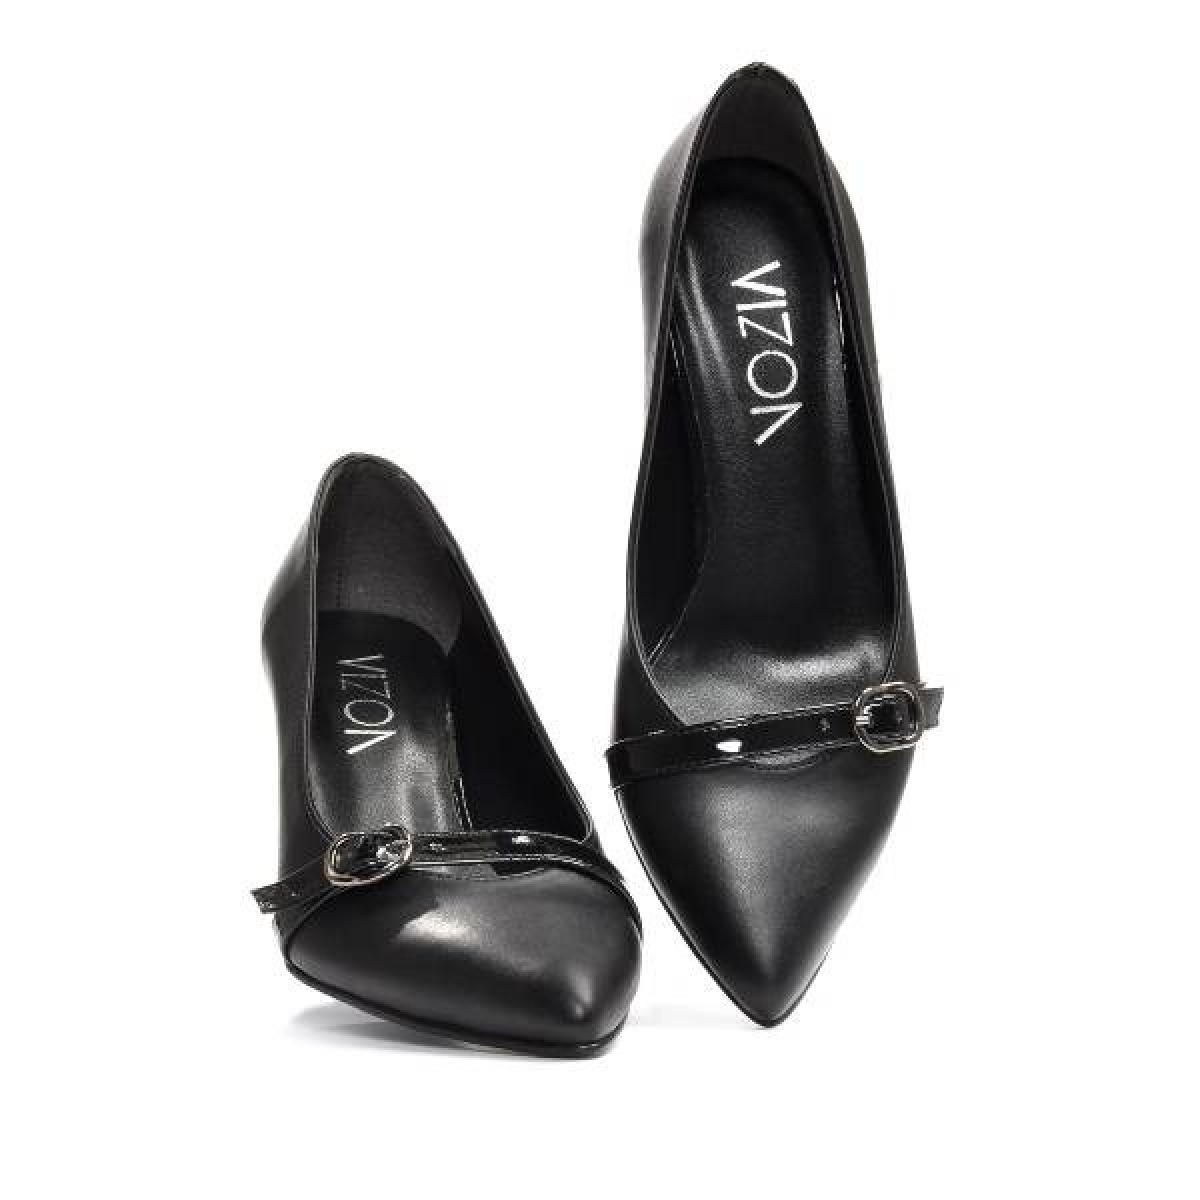 Flo Kadın  Siyah-Cilt Klasik Topuklu Ayakkabı VZN19-110K. 4